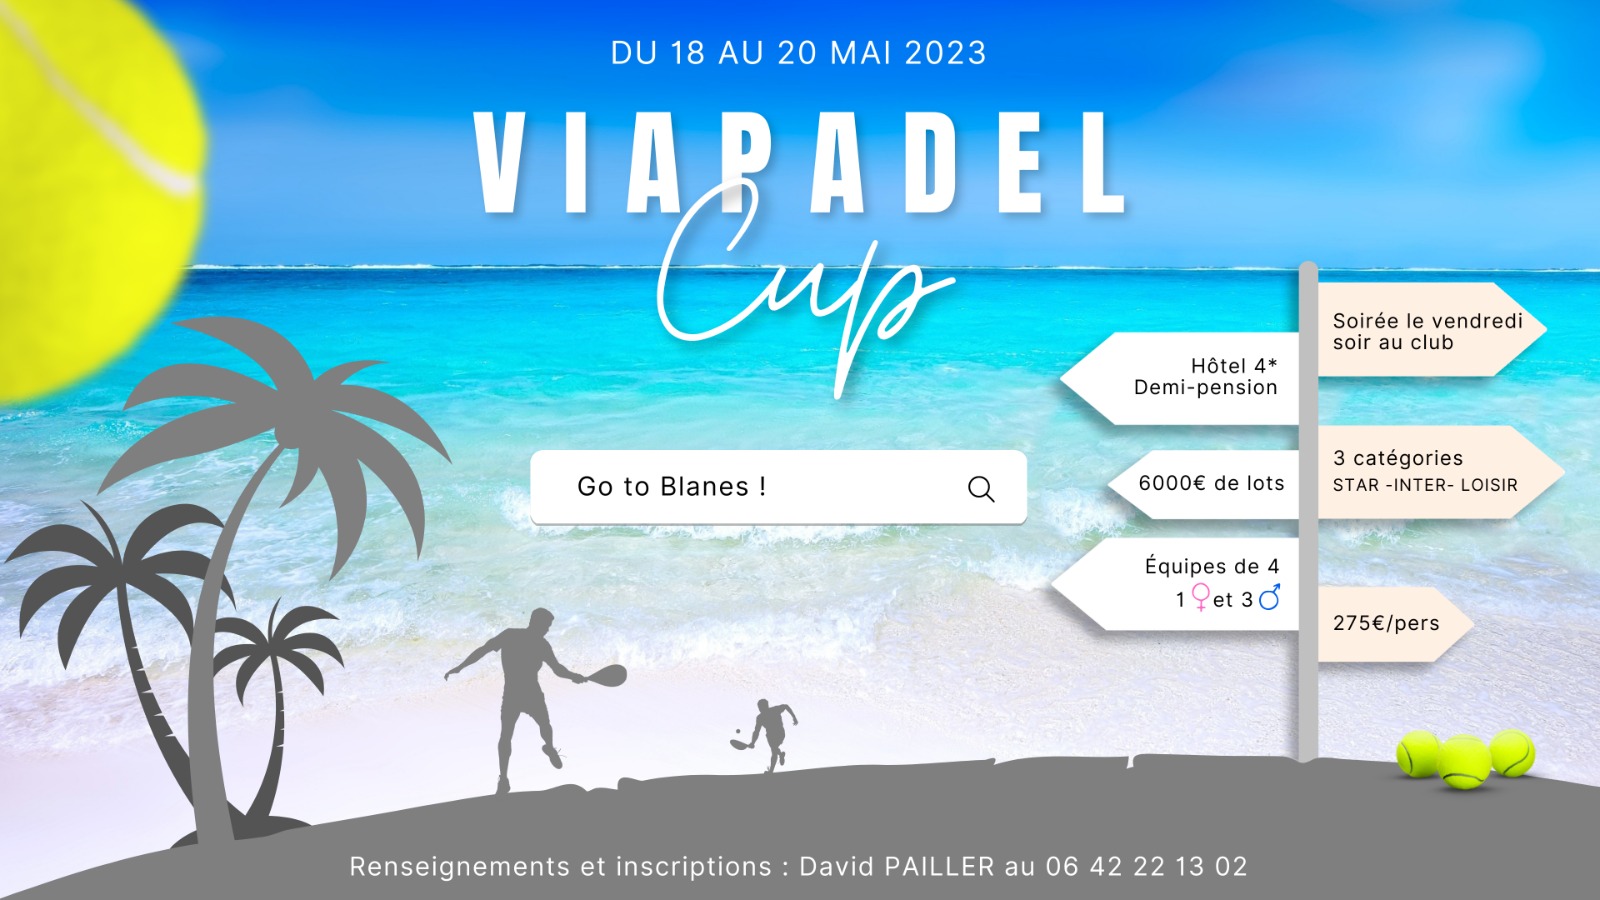 Via Padel Cup 2023: gaan we weer op pad?